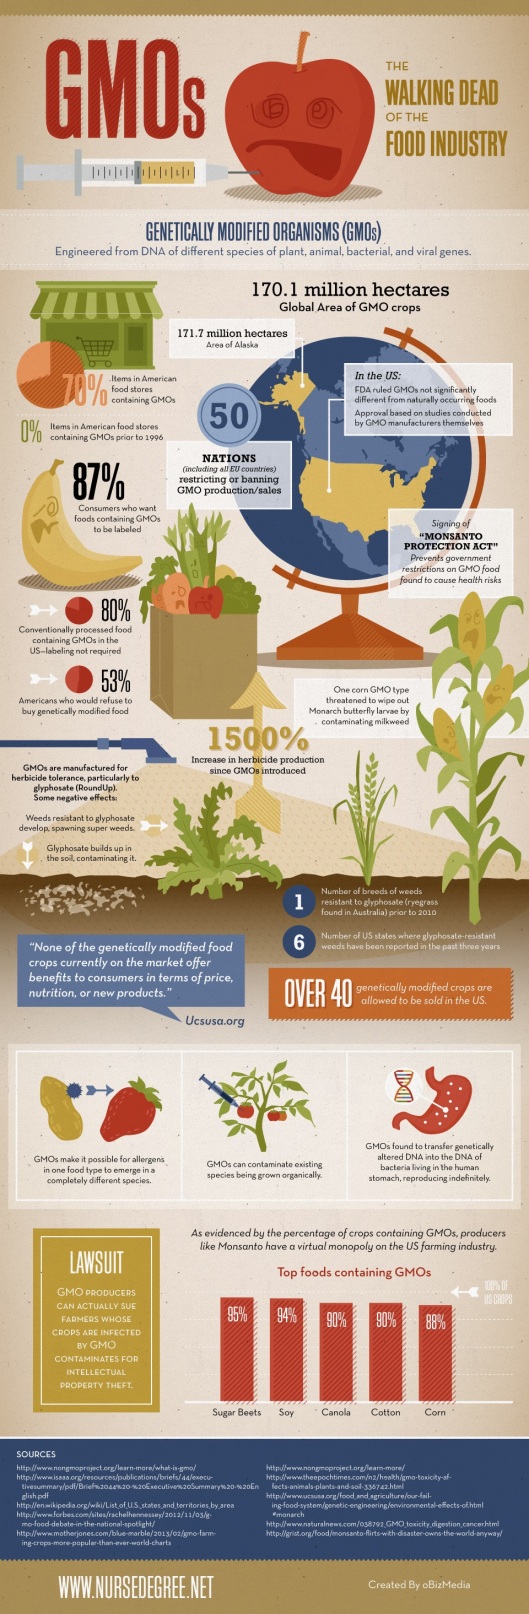 GMOs by Monsanto!